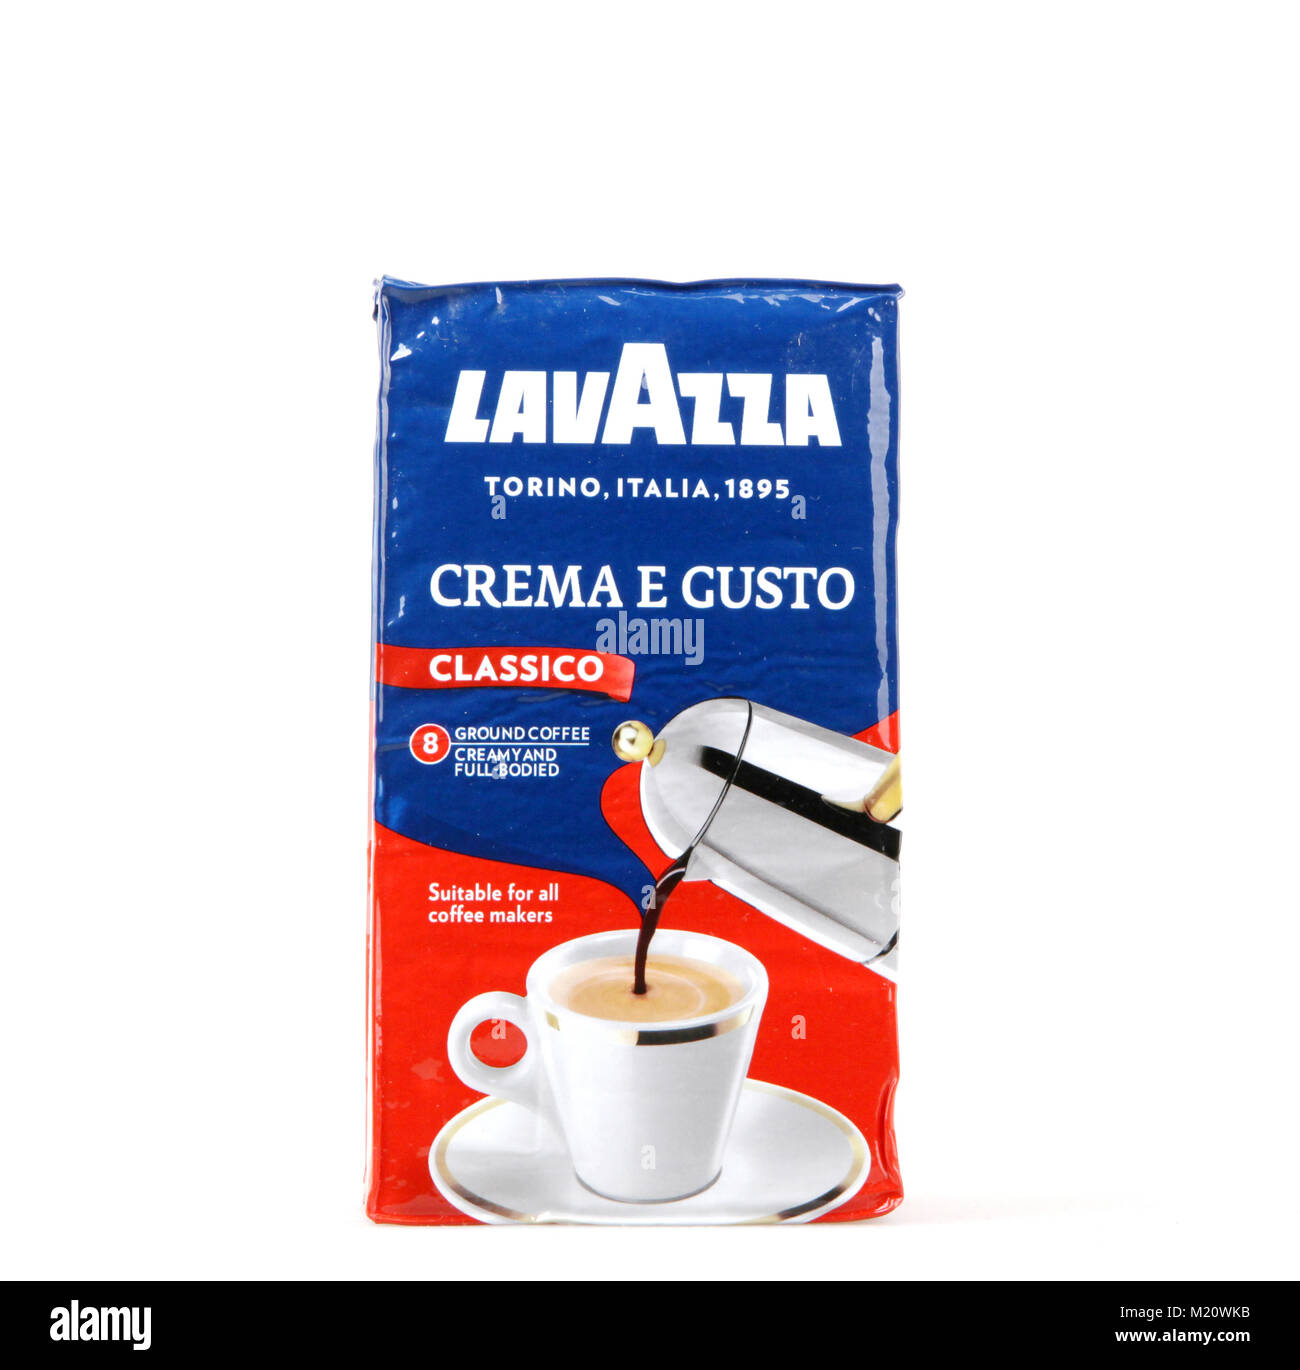 Pomorie, Bulgarien - Februar 03, 2018: Lavazza Kaffee auf weißem  Hintergrund. Lavazza - Der italienische Coffee Company seit 1895  Stockfotografie - Alamy